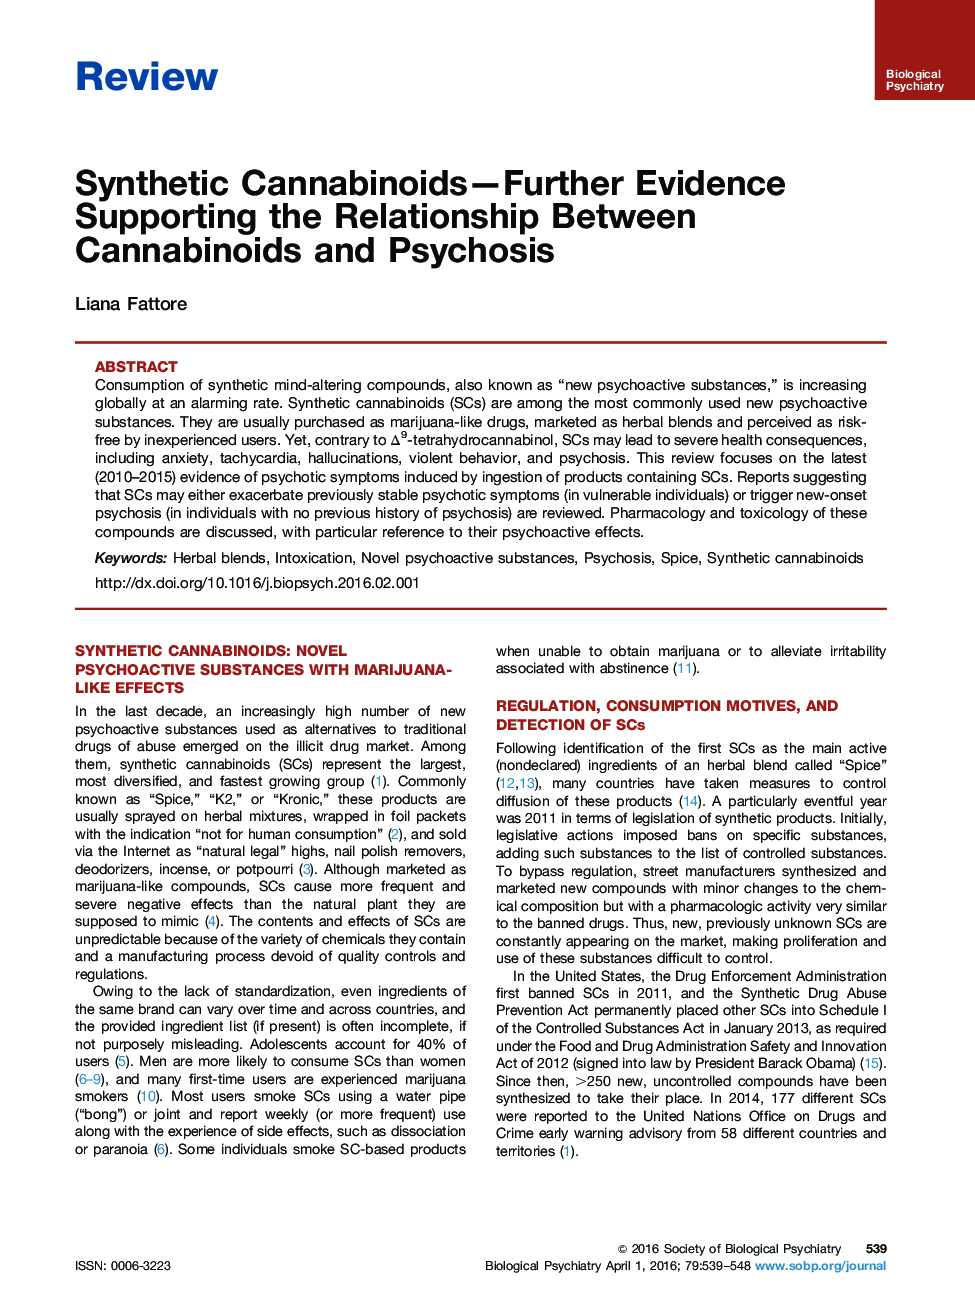 کانابینوئید های مصنوعی - شواهد بیشتری برای حمایت از رابطه کانابینوئید و روانپزشکی 